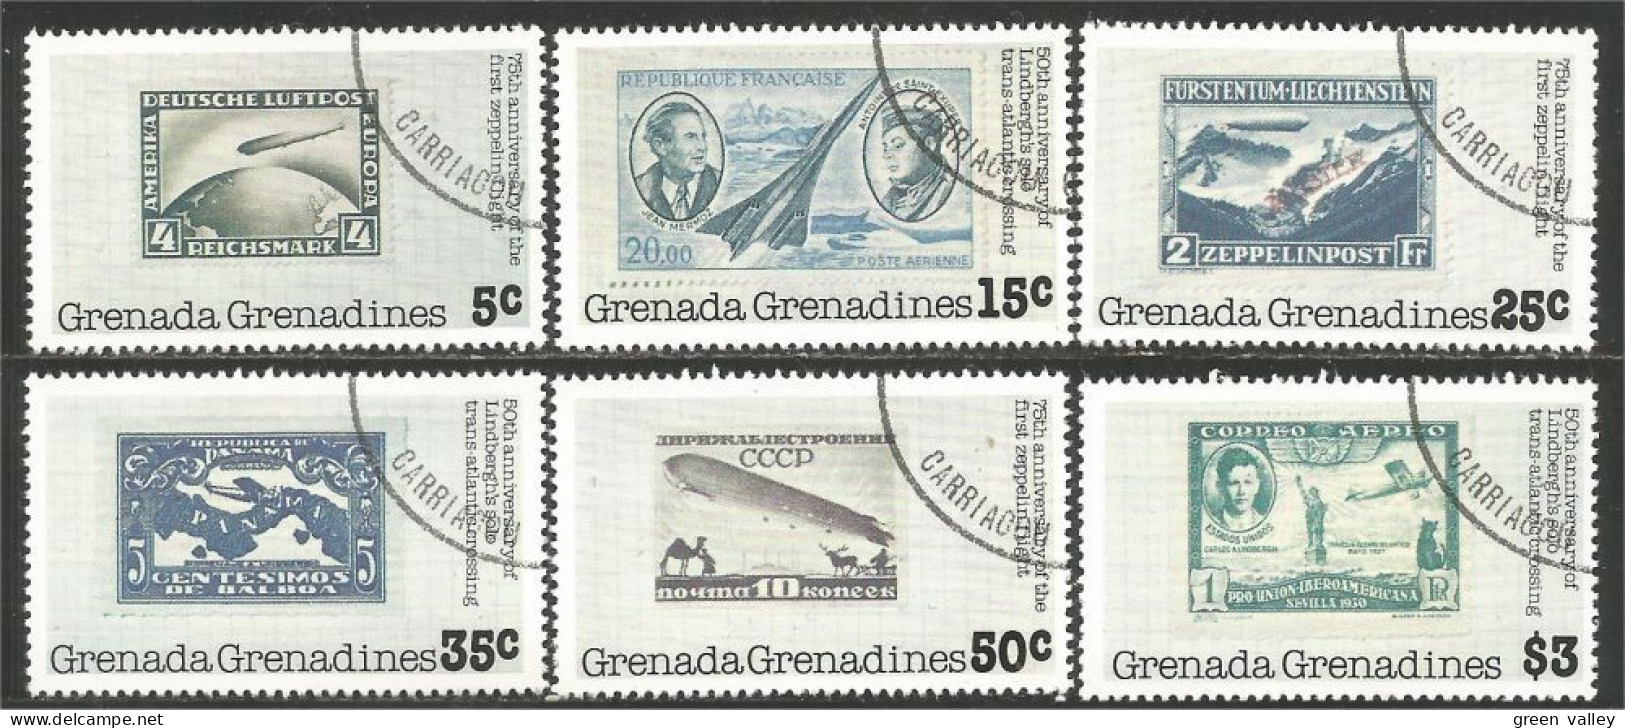 TT-27 Grenada Timbres Sur Timbres Stamps On Stamps - Postzegels Op Postzegels